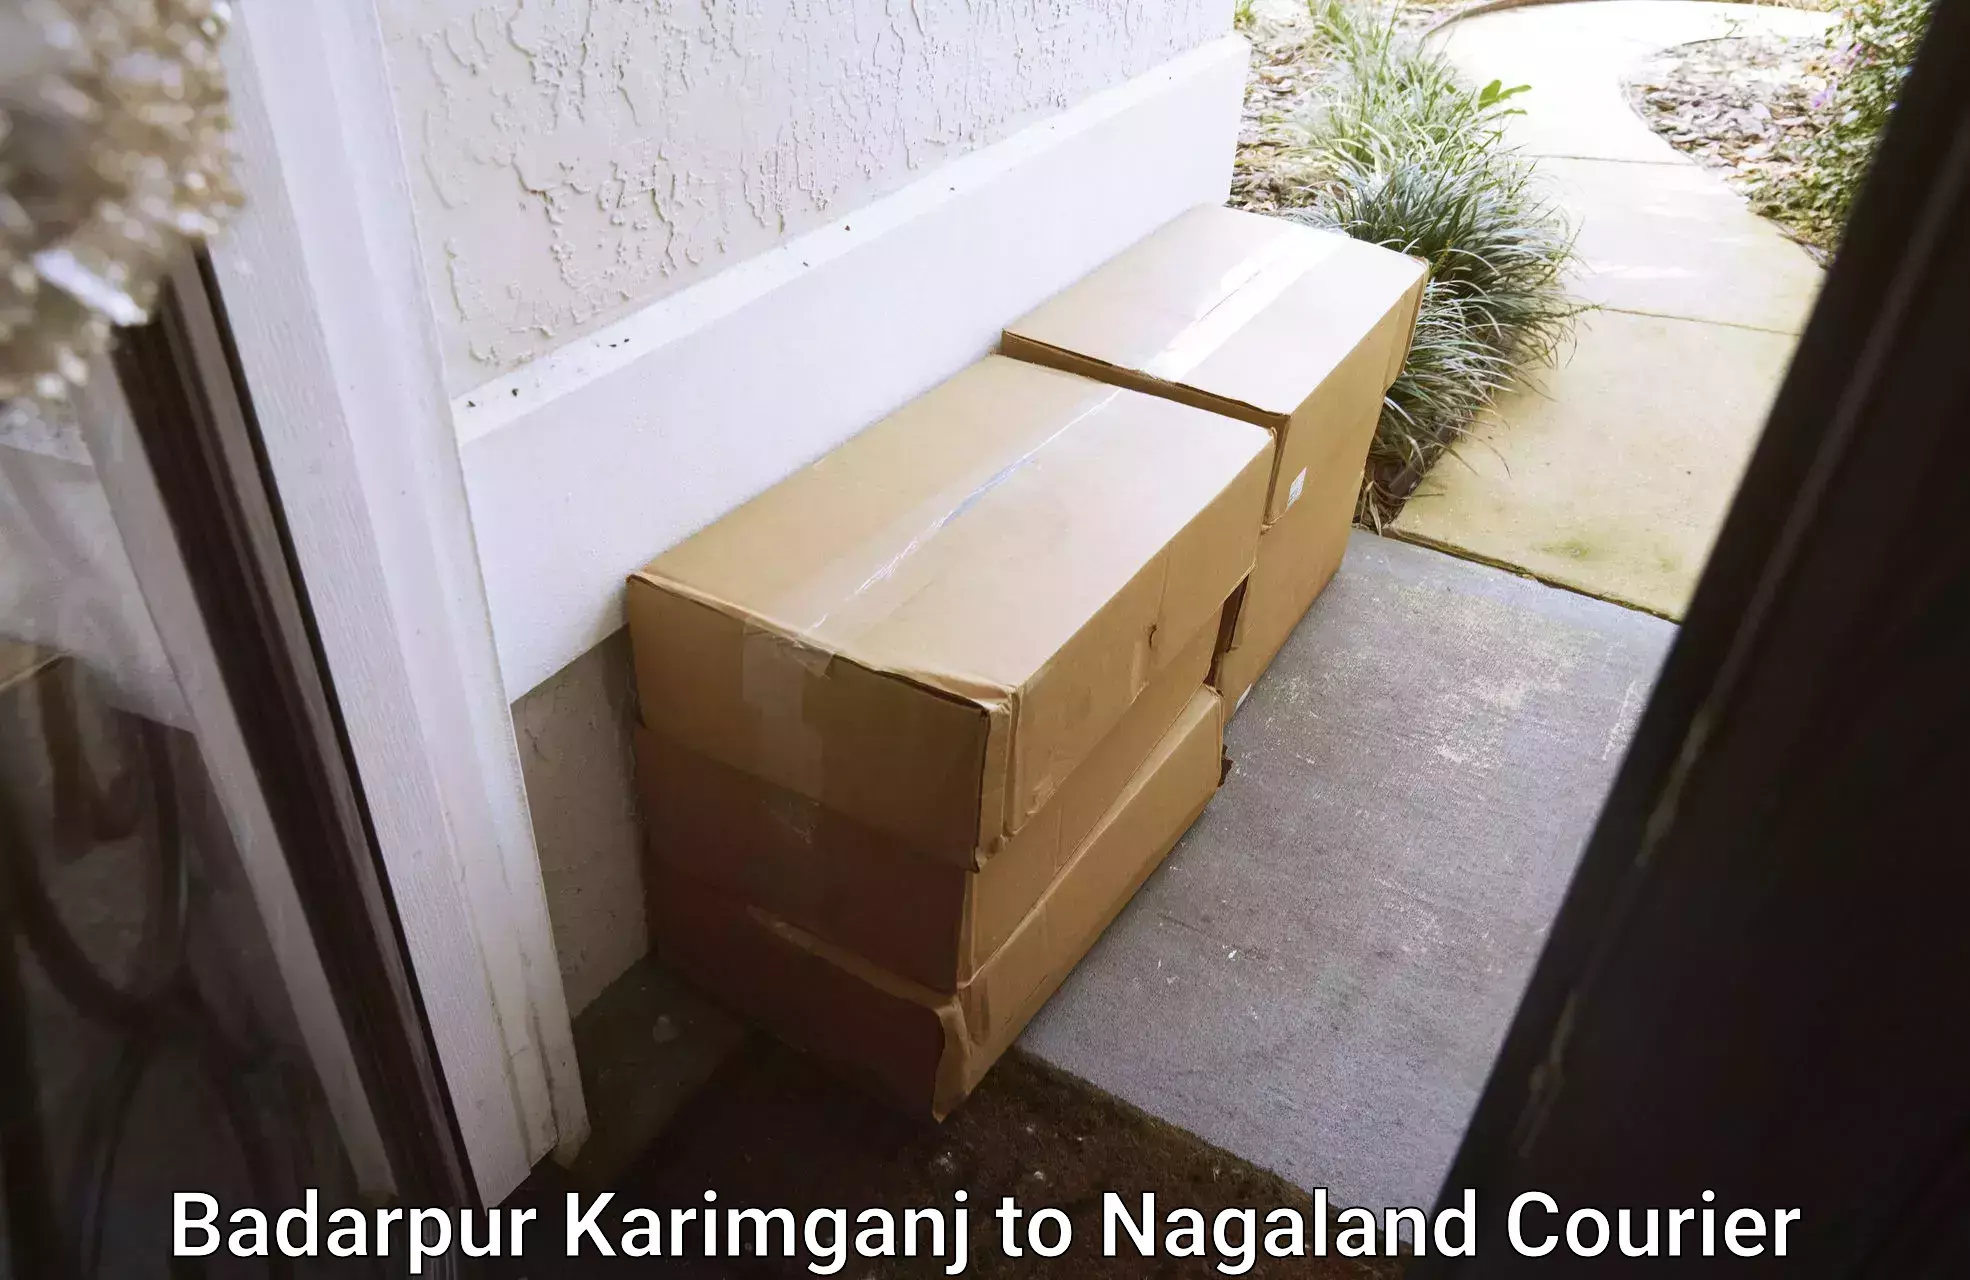 Full-service courier options Badarpur Karimganj to Tuensang